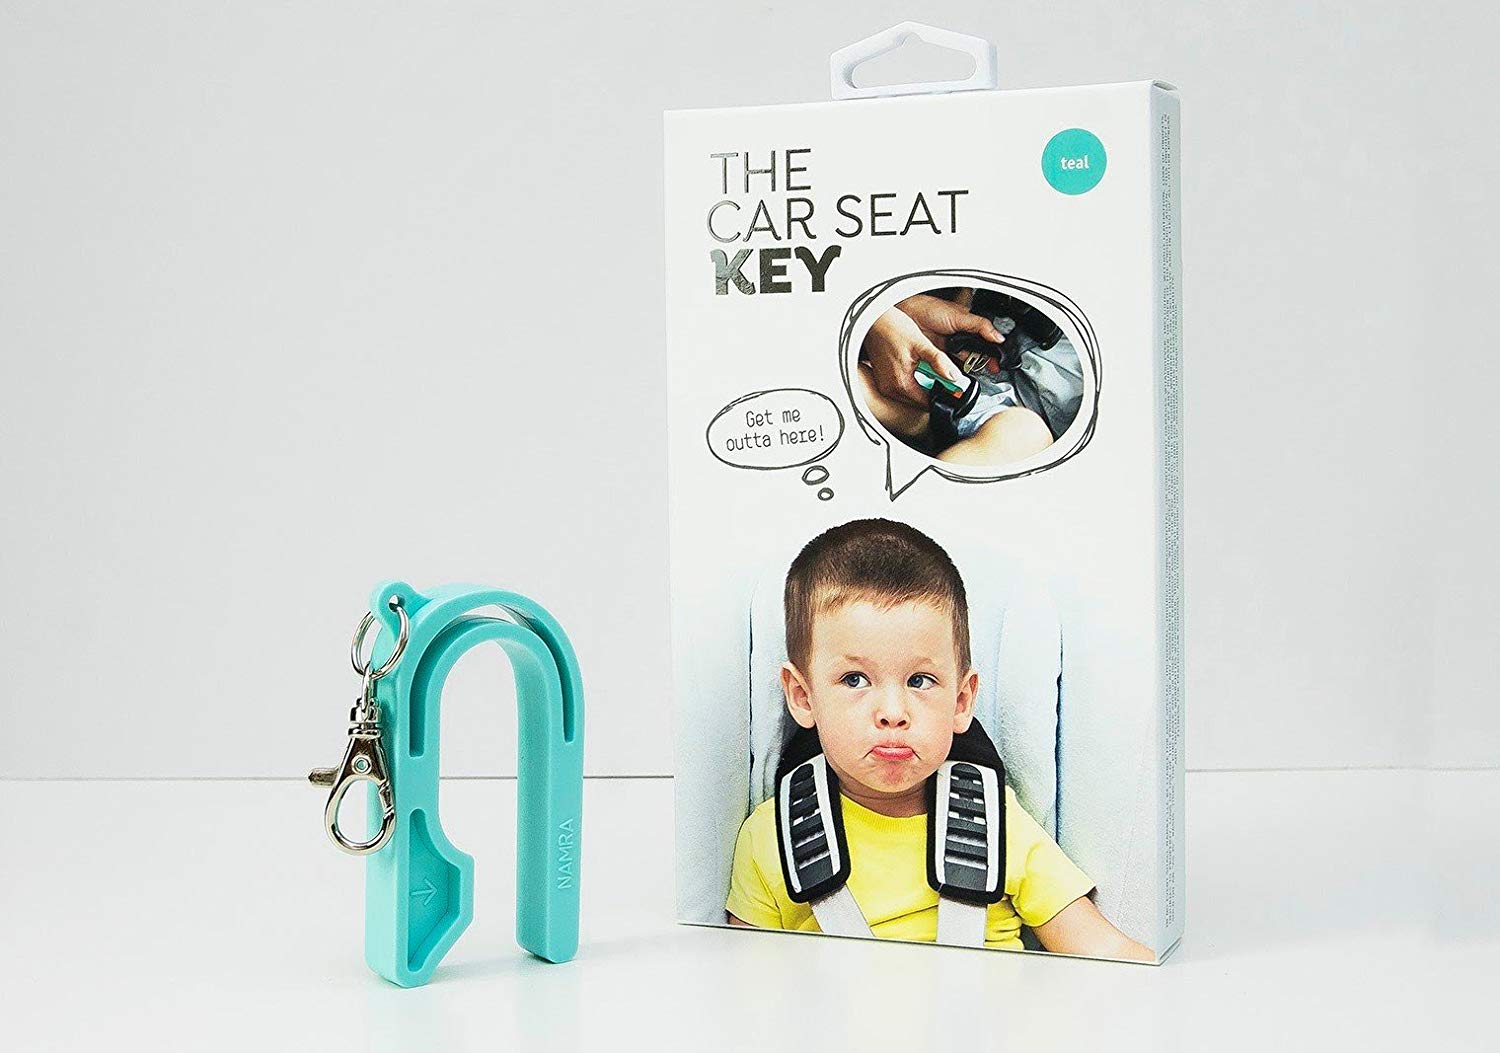 Car seat key helps release seat belts.